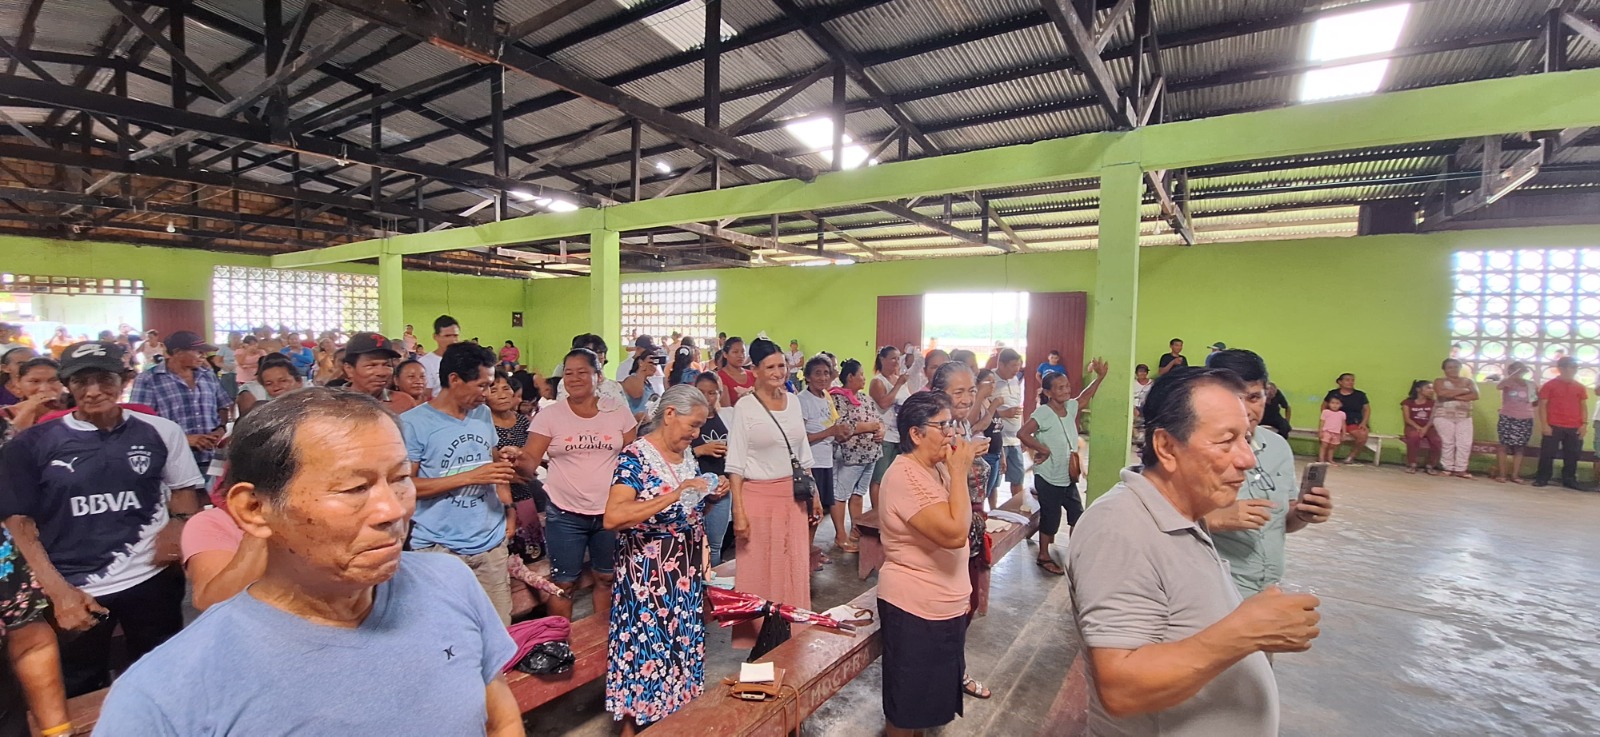 Asamblea del pueblo de Aucayo